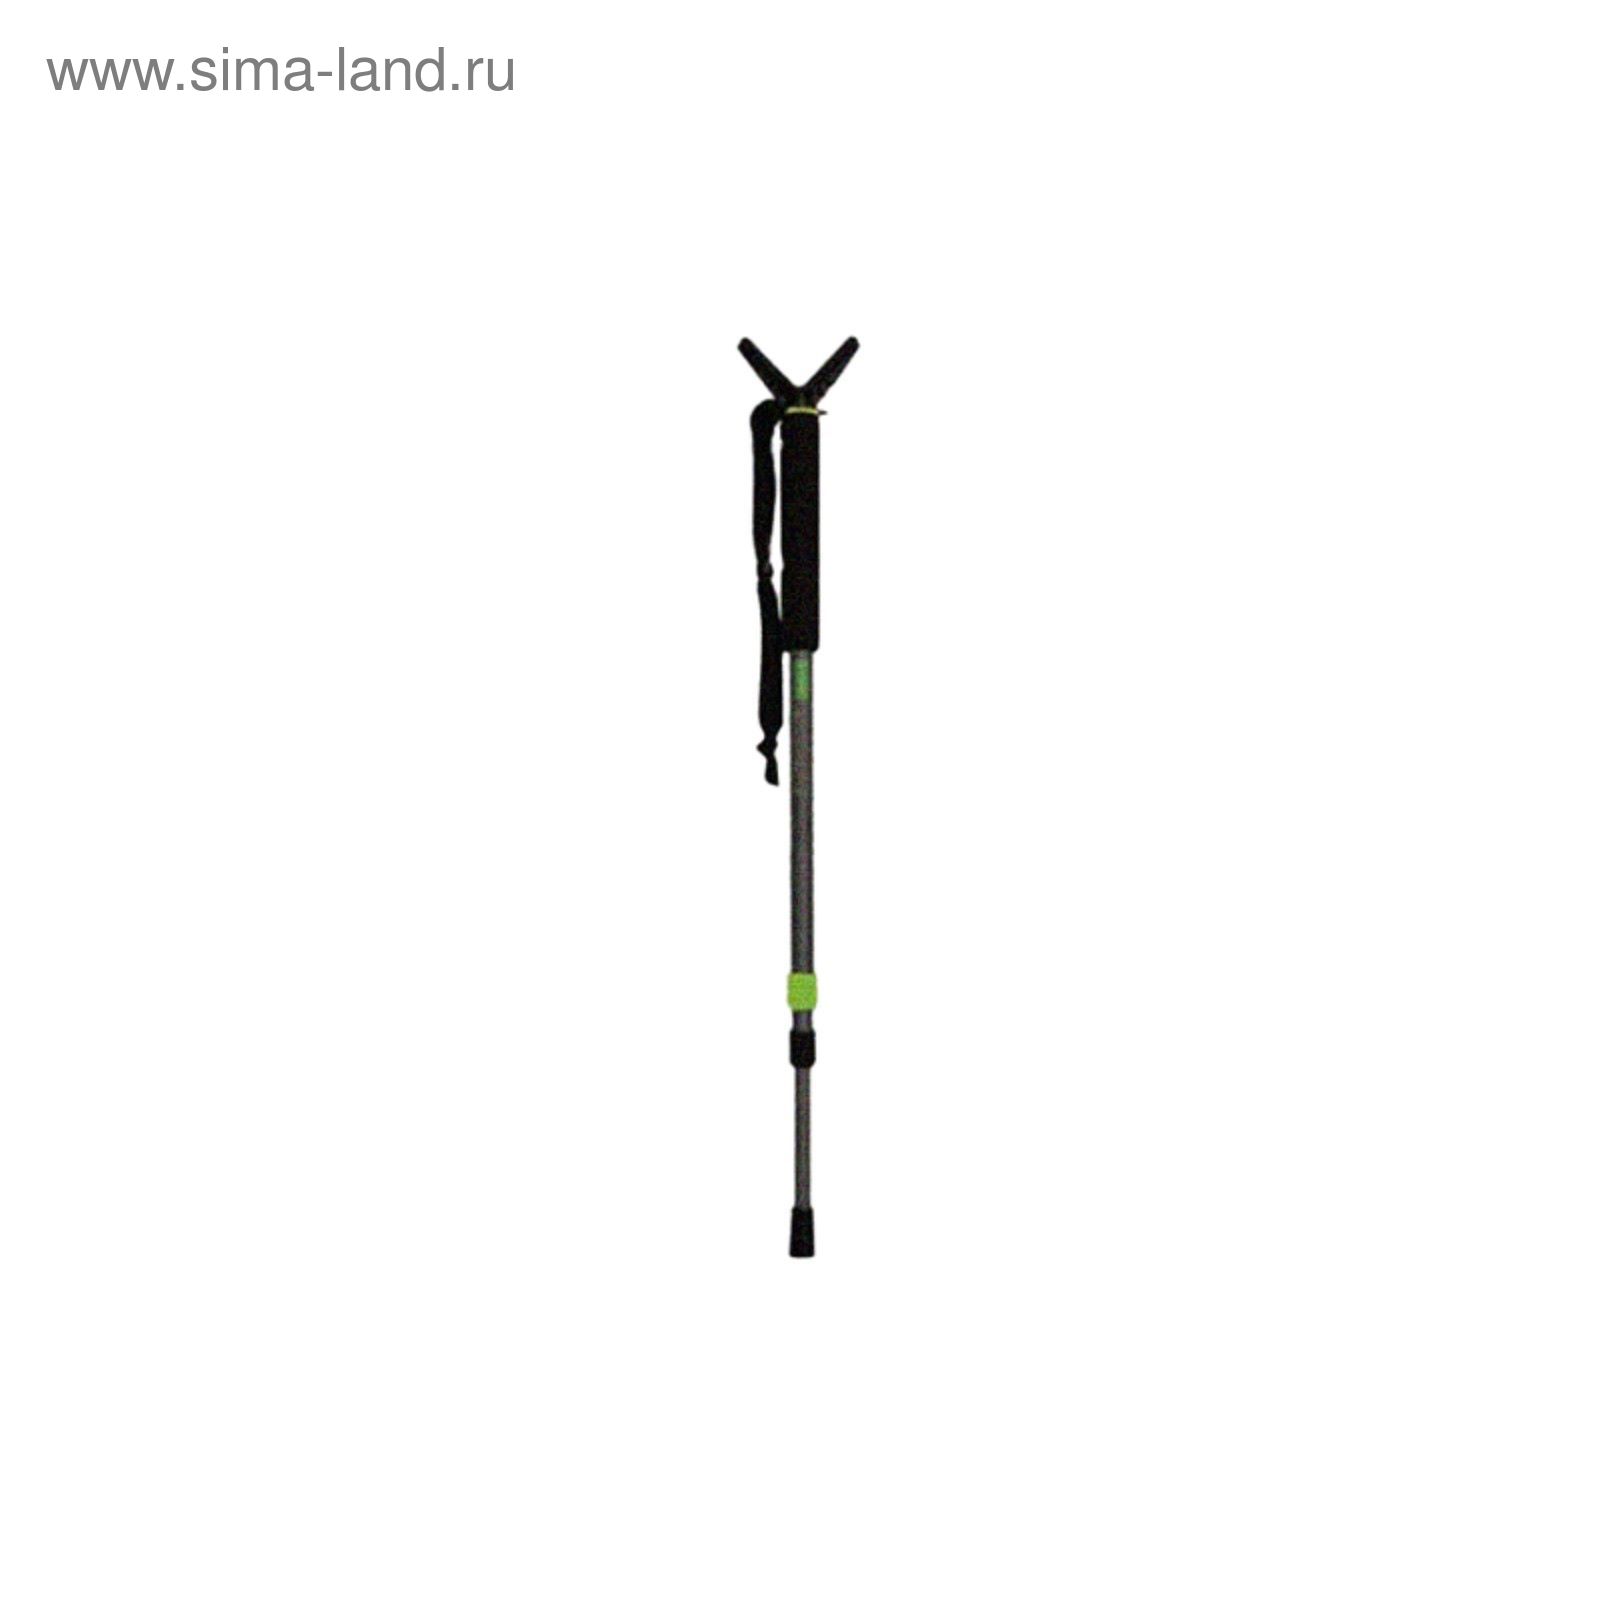 Опора для ружья Primos PoleCat™ 1 нога, 3 секции, 64-157 см